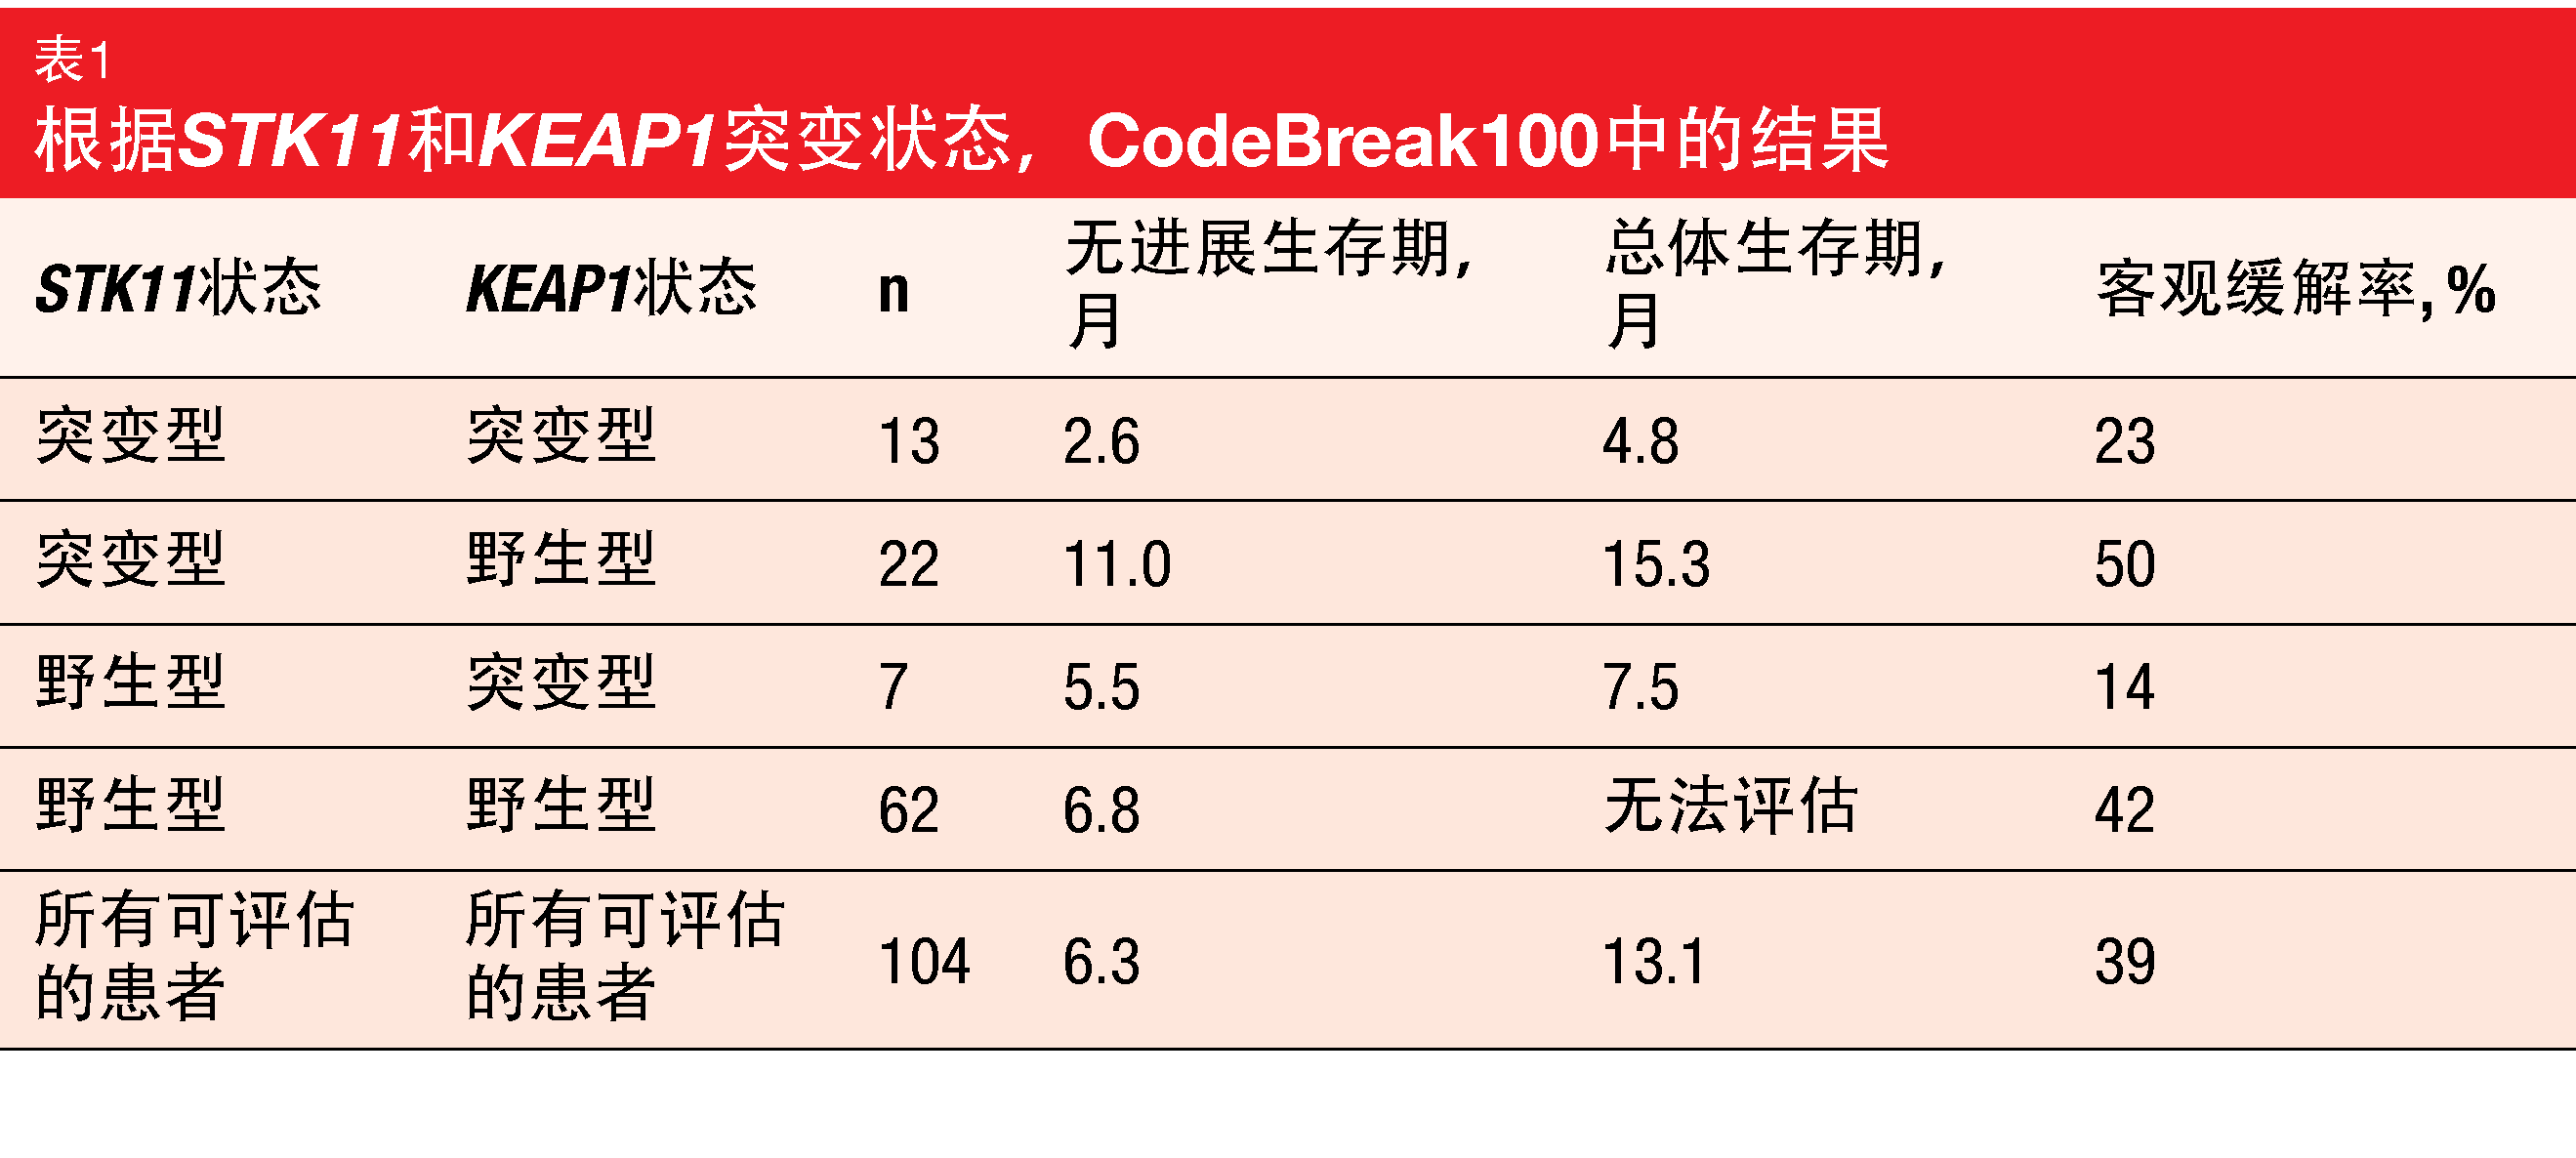 表1 根据STK11和KEAP1突变状态，CodeBreak100中的结果